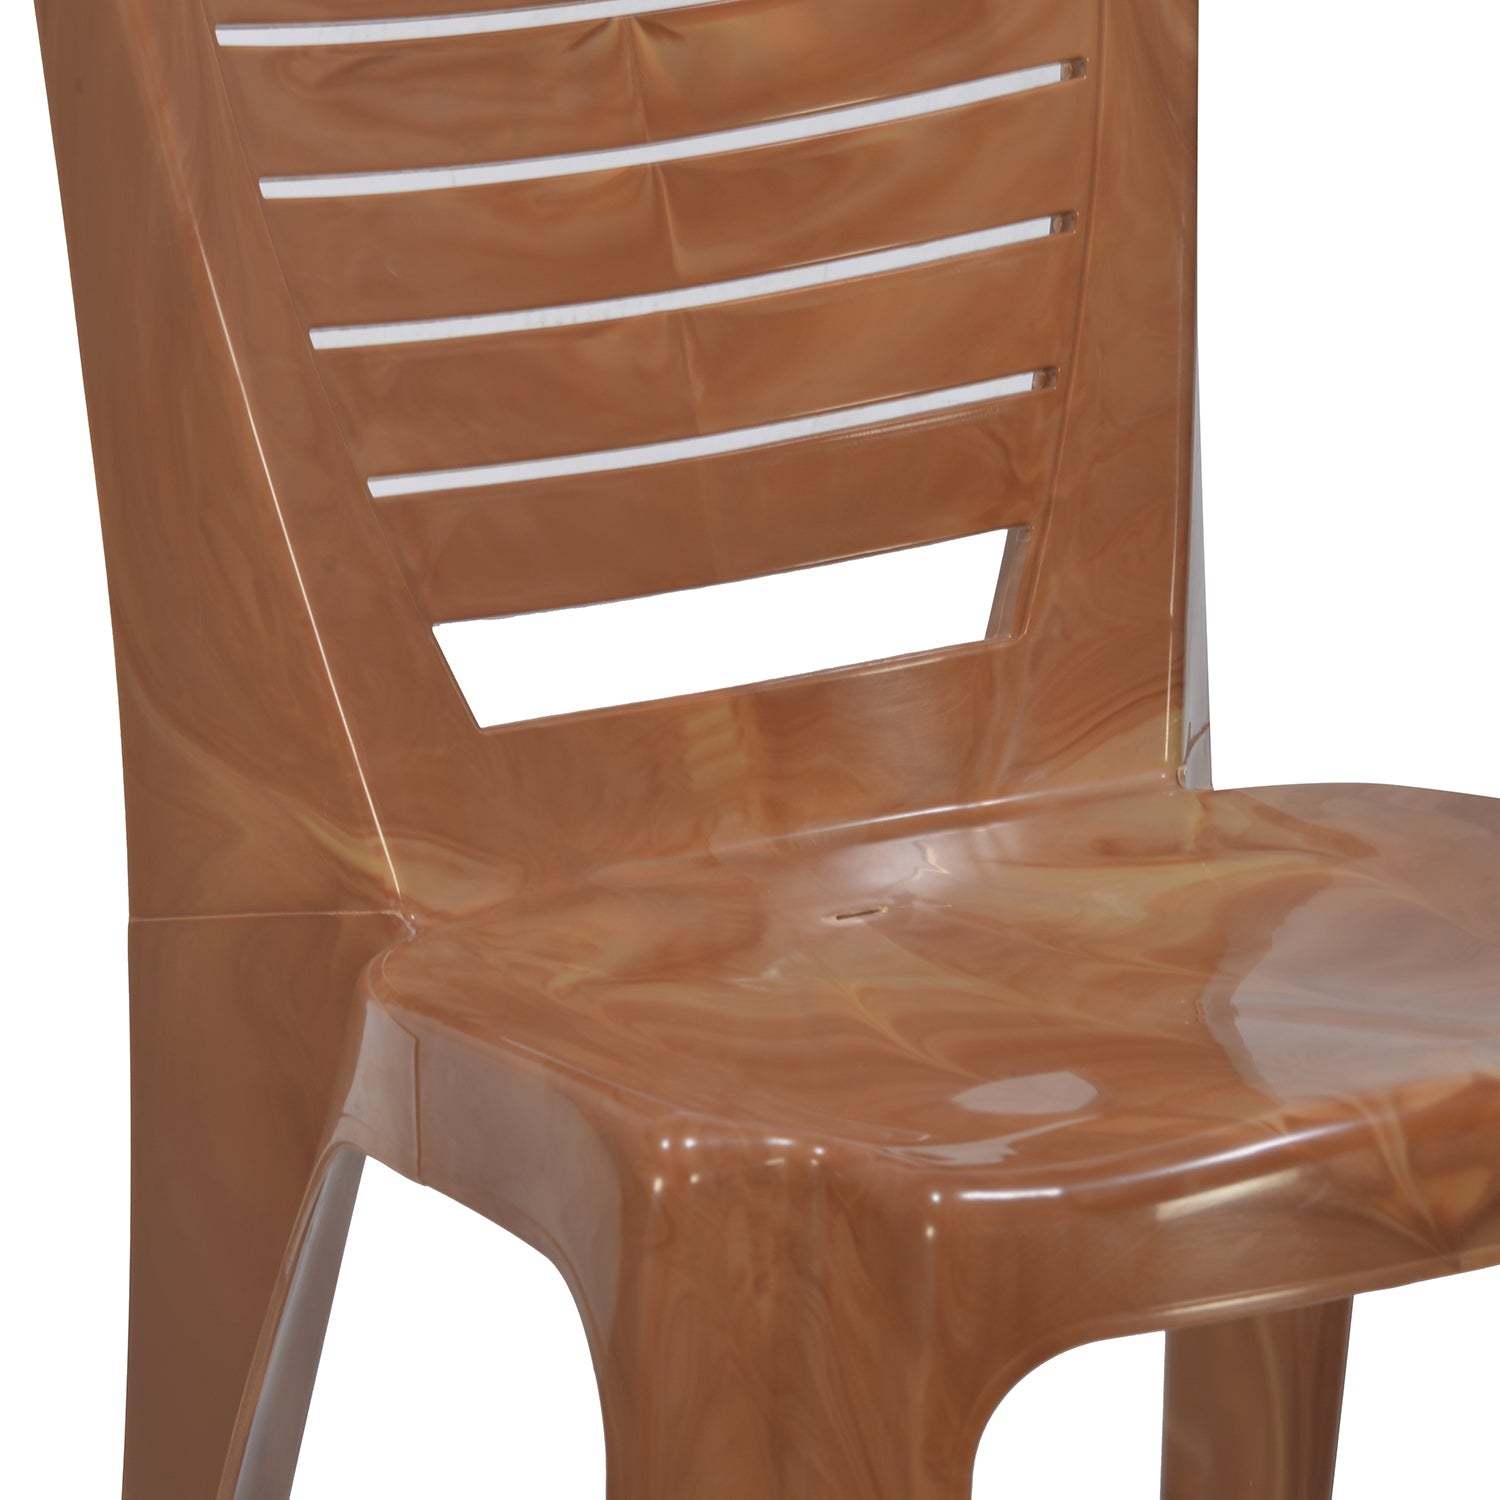 Nilkamal Armless Chair CHR4025 (Pear Wood)